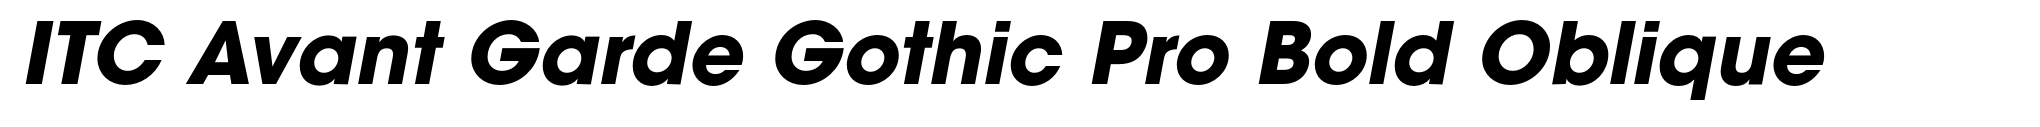 ITC Avant Garde Gothic Pro Bold Oblique image